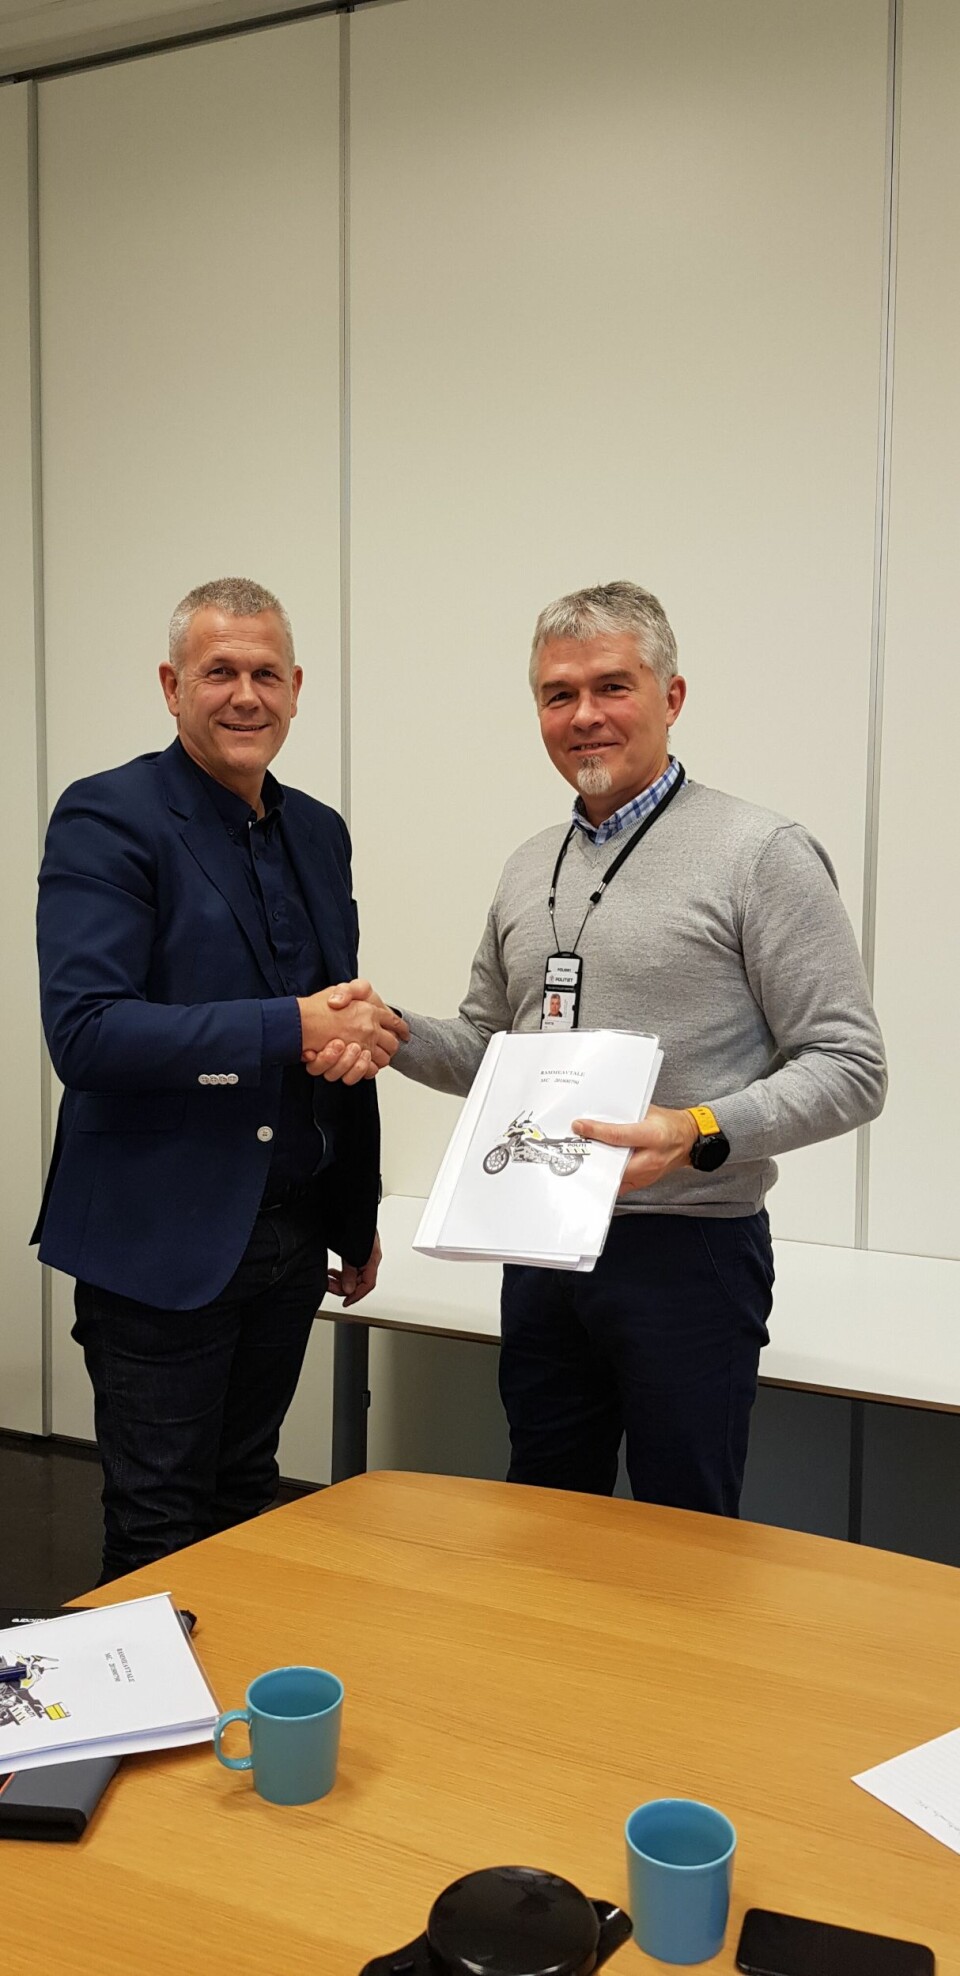 Arild Saastad fra Handicare og Luc Martin fra Politiets Fellestjenester har signert kontrakten for ny motorsykkel.